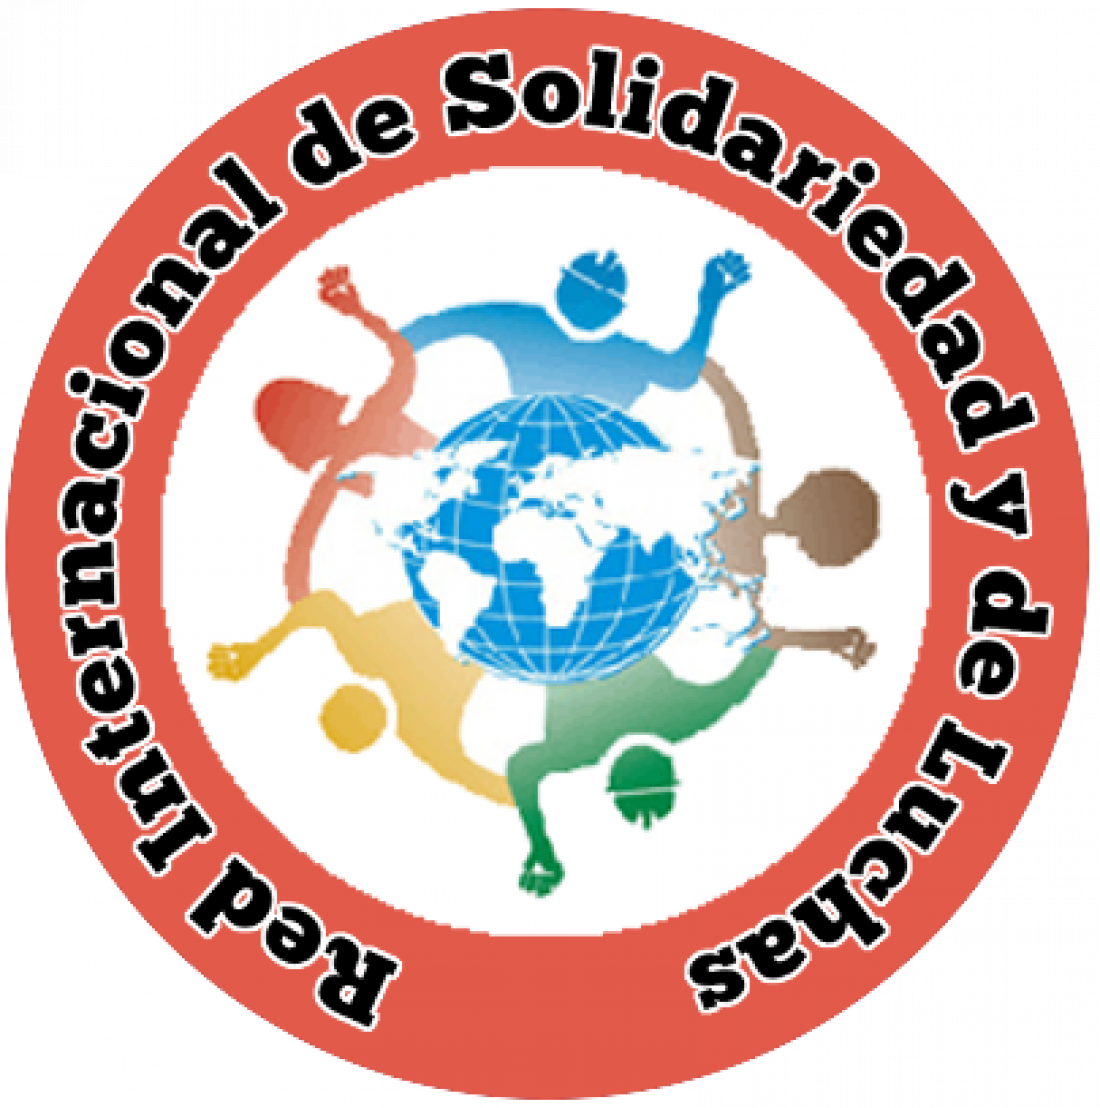 Red Internacional de Solidariedad y de Luchas